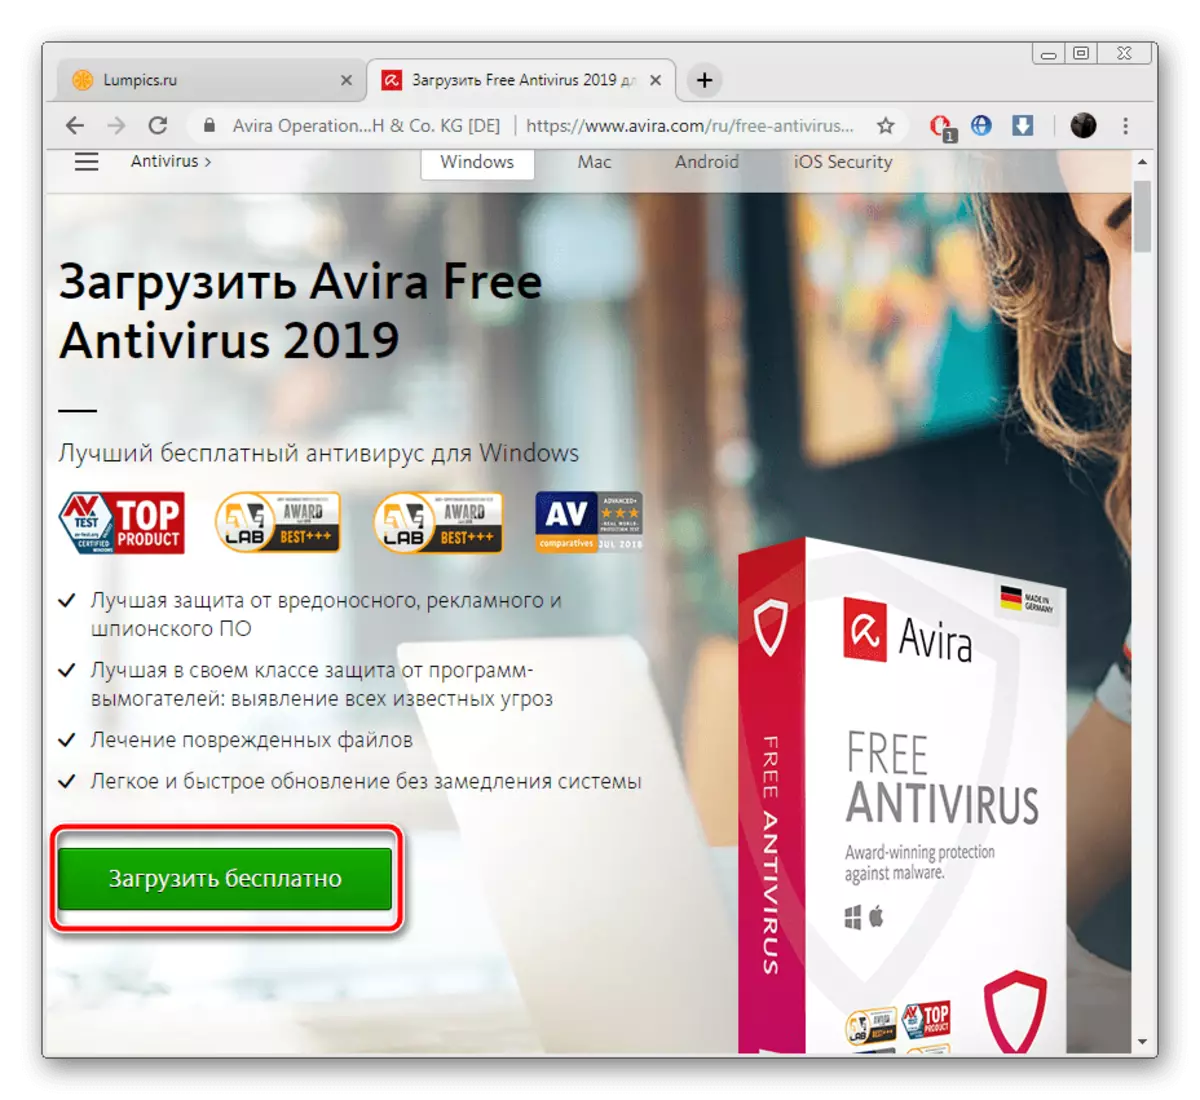 Download Avira Antivirus